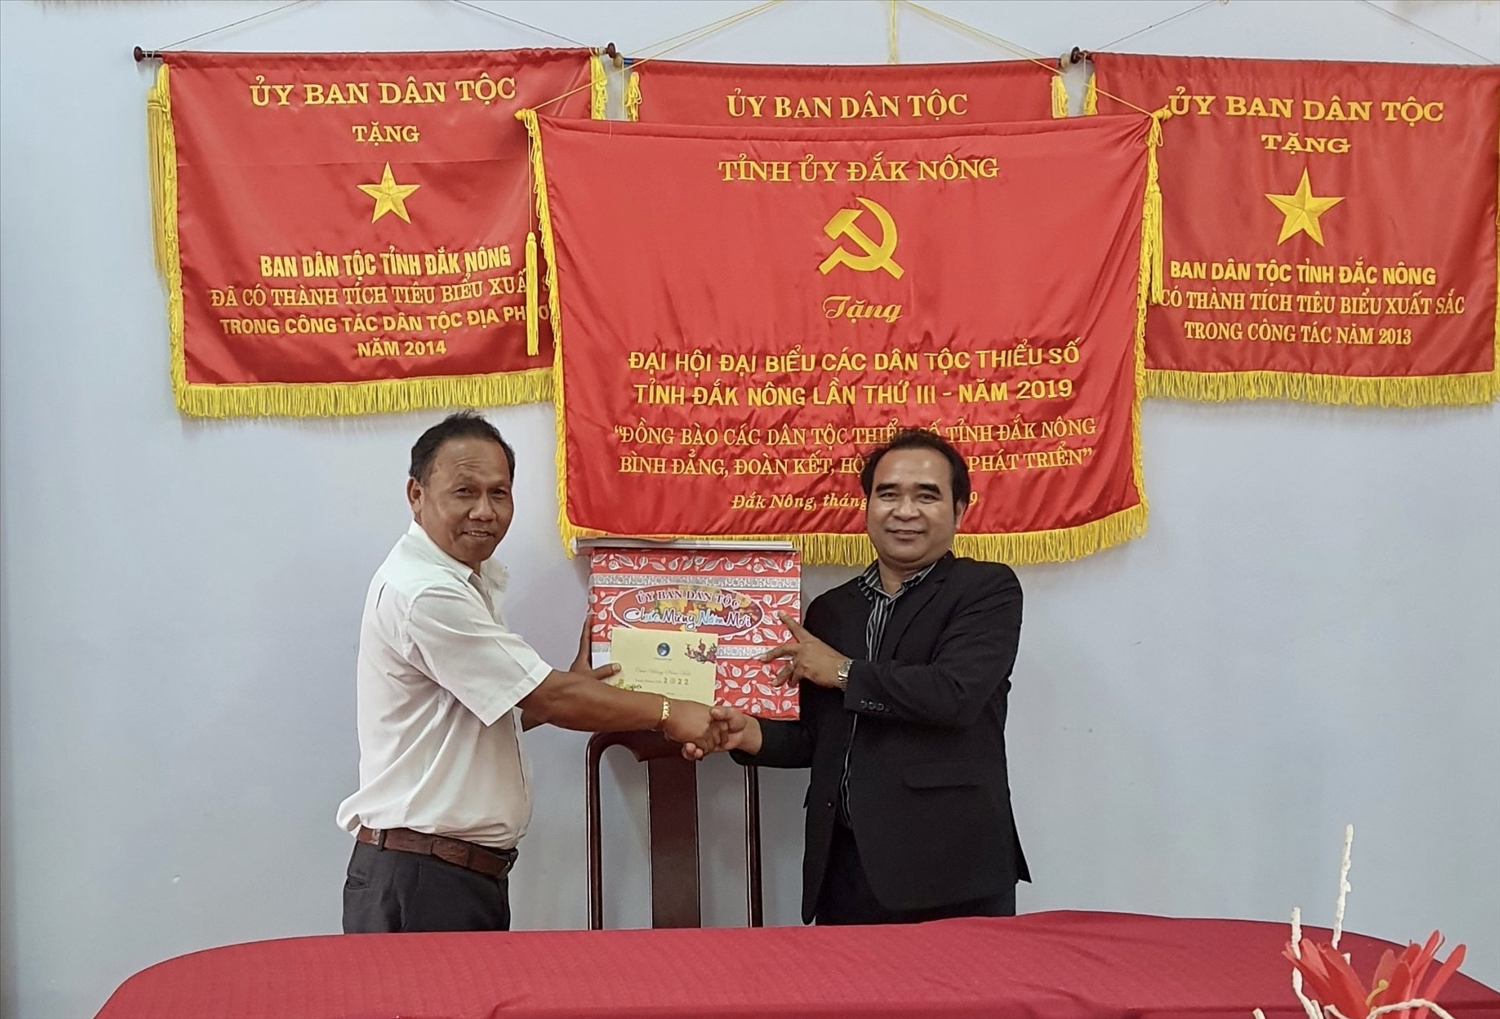 Ông Điểu Mưu, Phó Vụ trưởng Vụ Địa phương II trao quà Ban Dân tộc tỉnh Đắk Nông